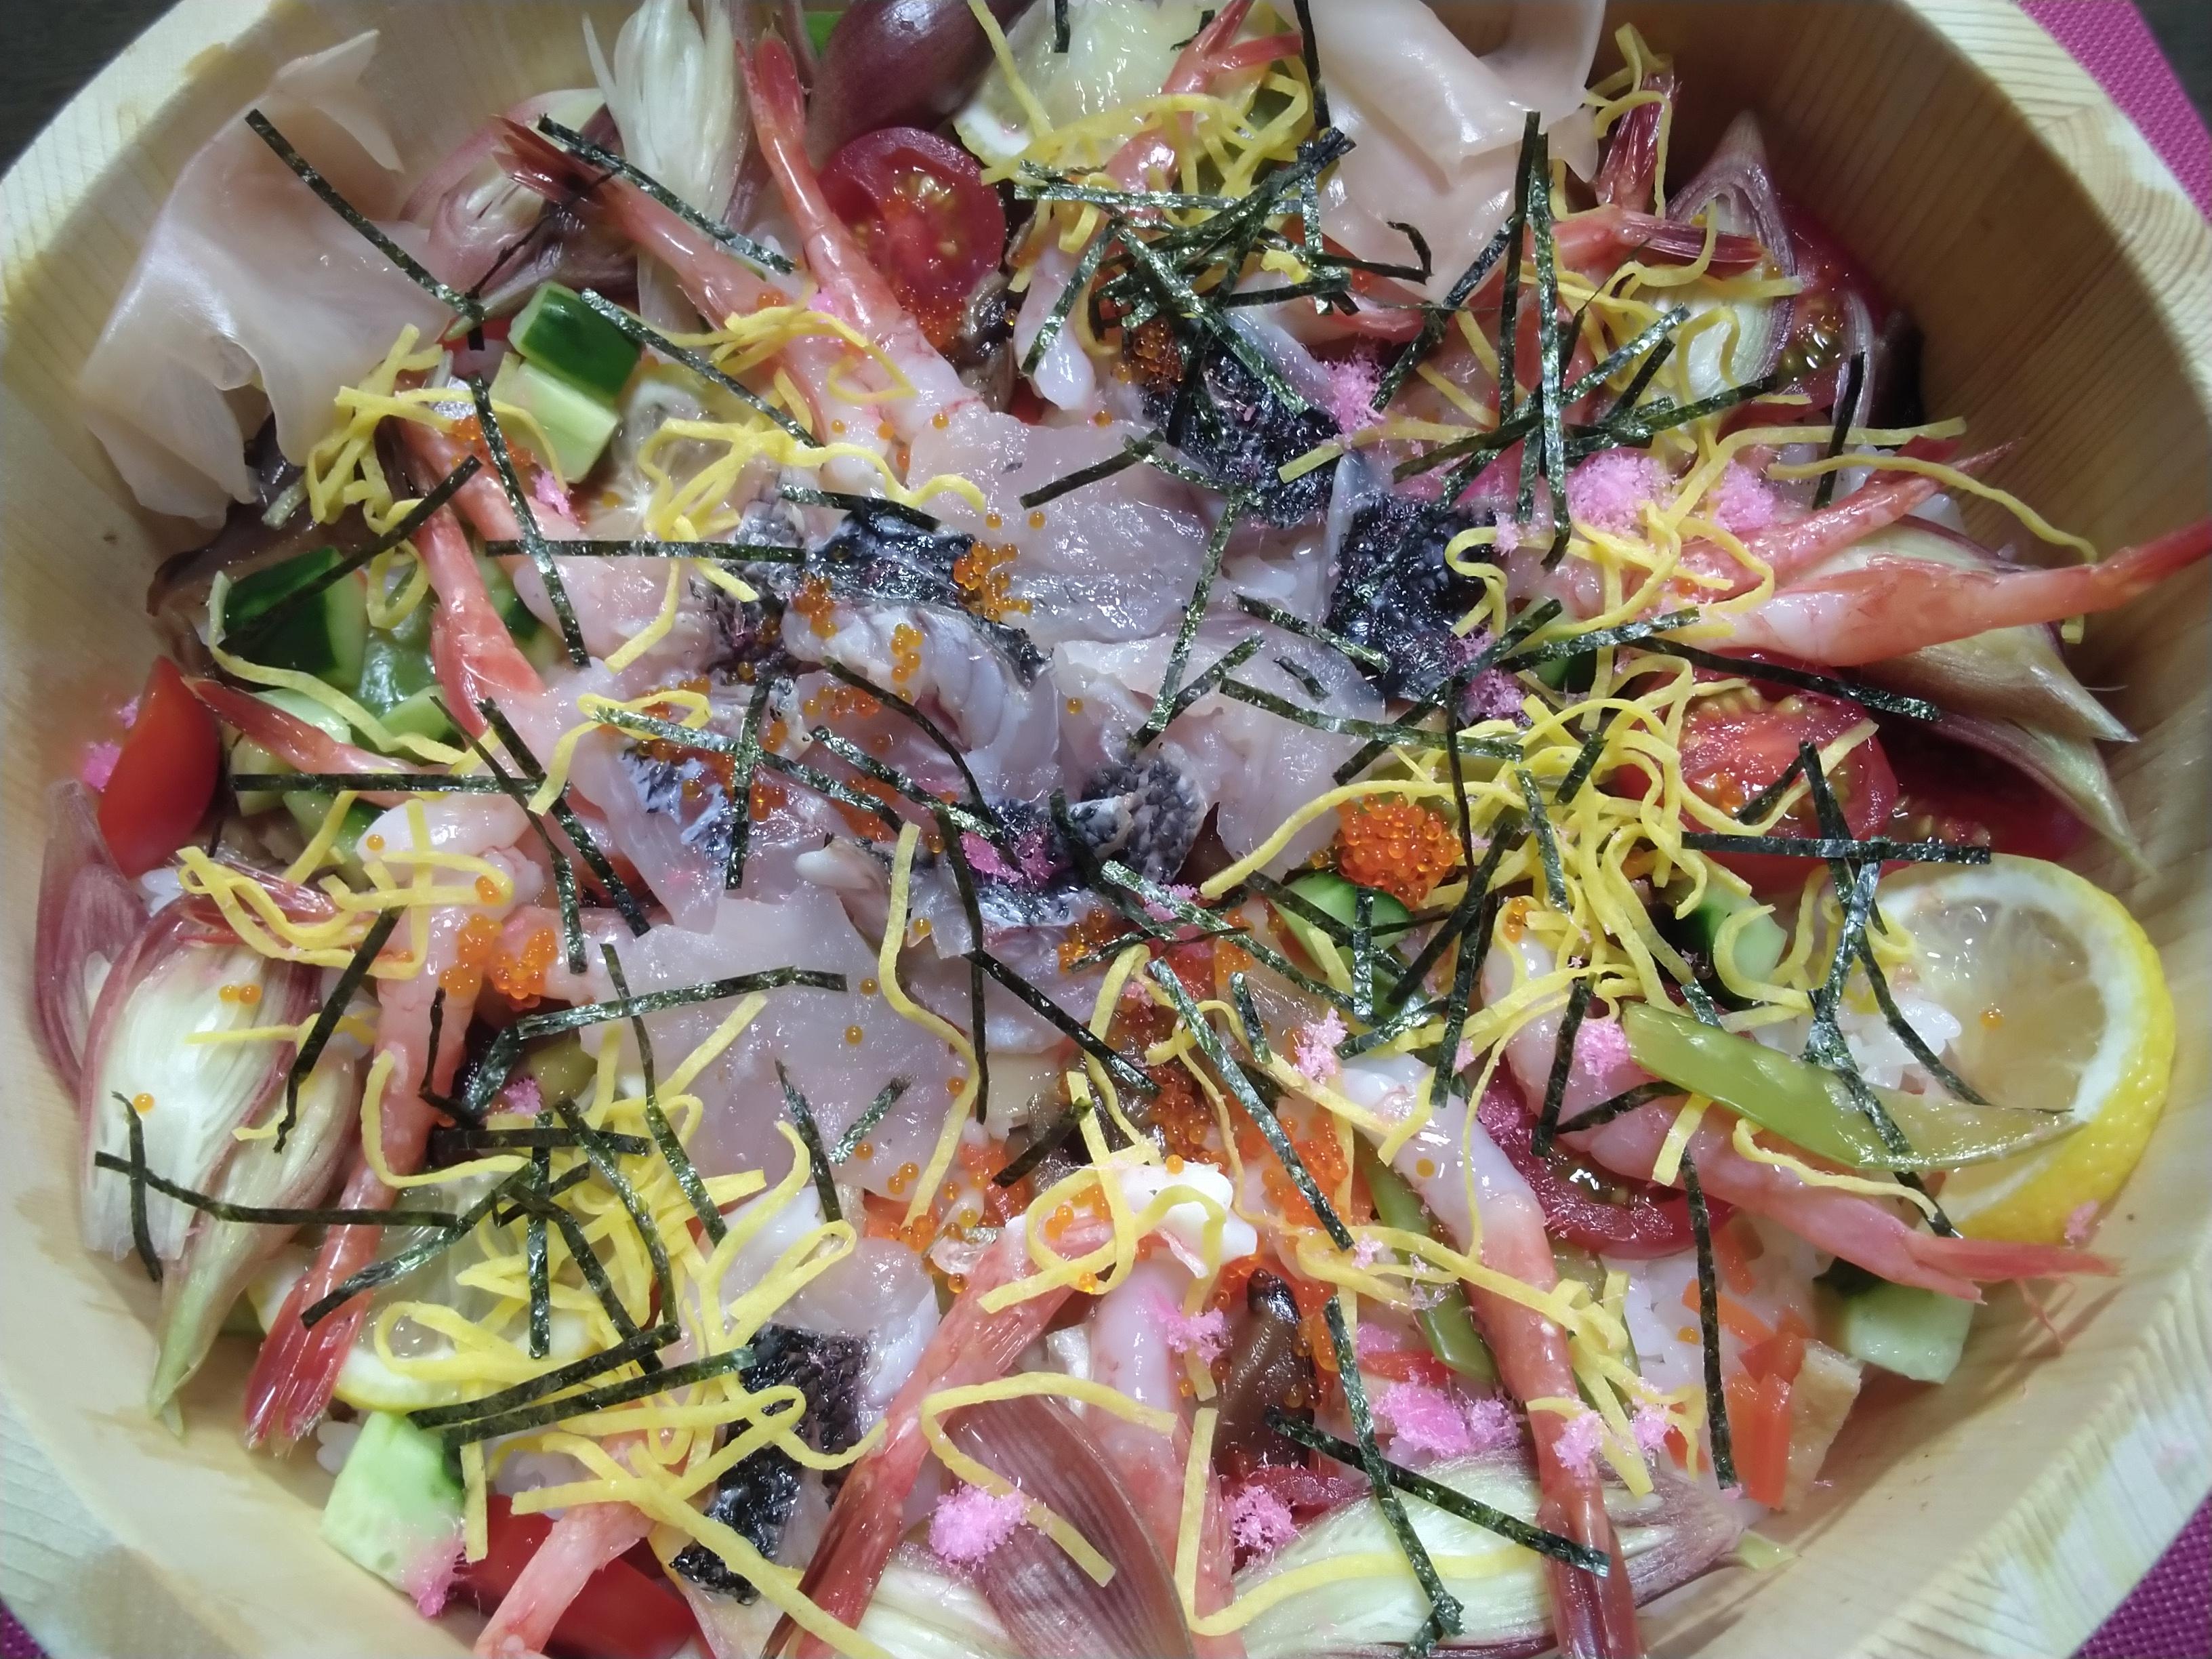 メジナのちらし寿司。魚処理。半身は炙りで。①すし飯を作ります。ちらし寿司の元、椎茸旨煮、甘酢②メジナ刺身、甘海老を並べます。③菜の花、きゅうりサイコロ切り、絹さや、レモン、プチトマト、ミョウガ、ガリで飾り付けます。④錦糸玉子、糸海苔、とびっこ、桜でんぶを散らして完成です。下準備をしっかりすればあとは並べるだけで見た目も綺麗なちらし寿司が簡単に出来ます。ご飯は１、５合を普通の固さに炊きます。ご飯が炊きたてのうちにすし酢を切るように混ぜるのがコツです。画像で２～３人前位。